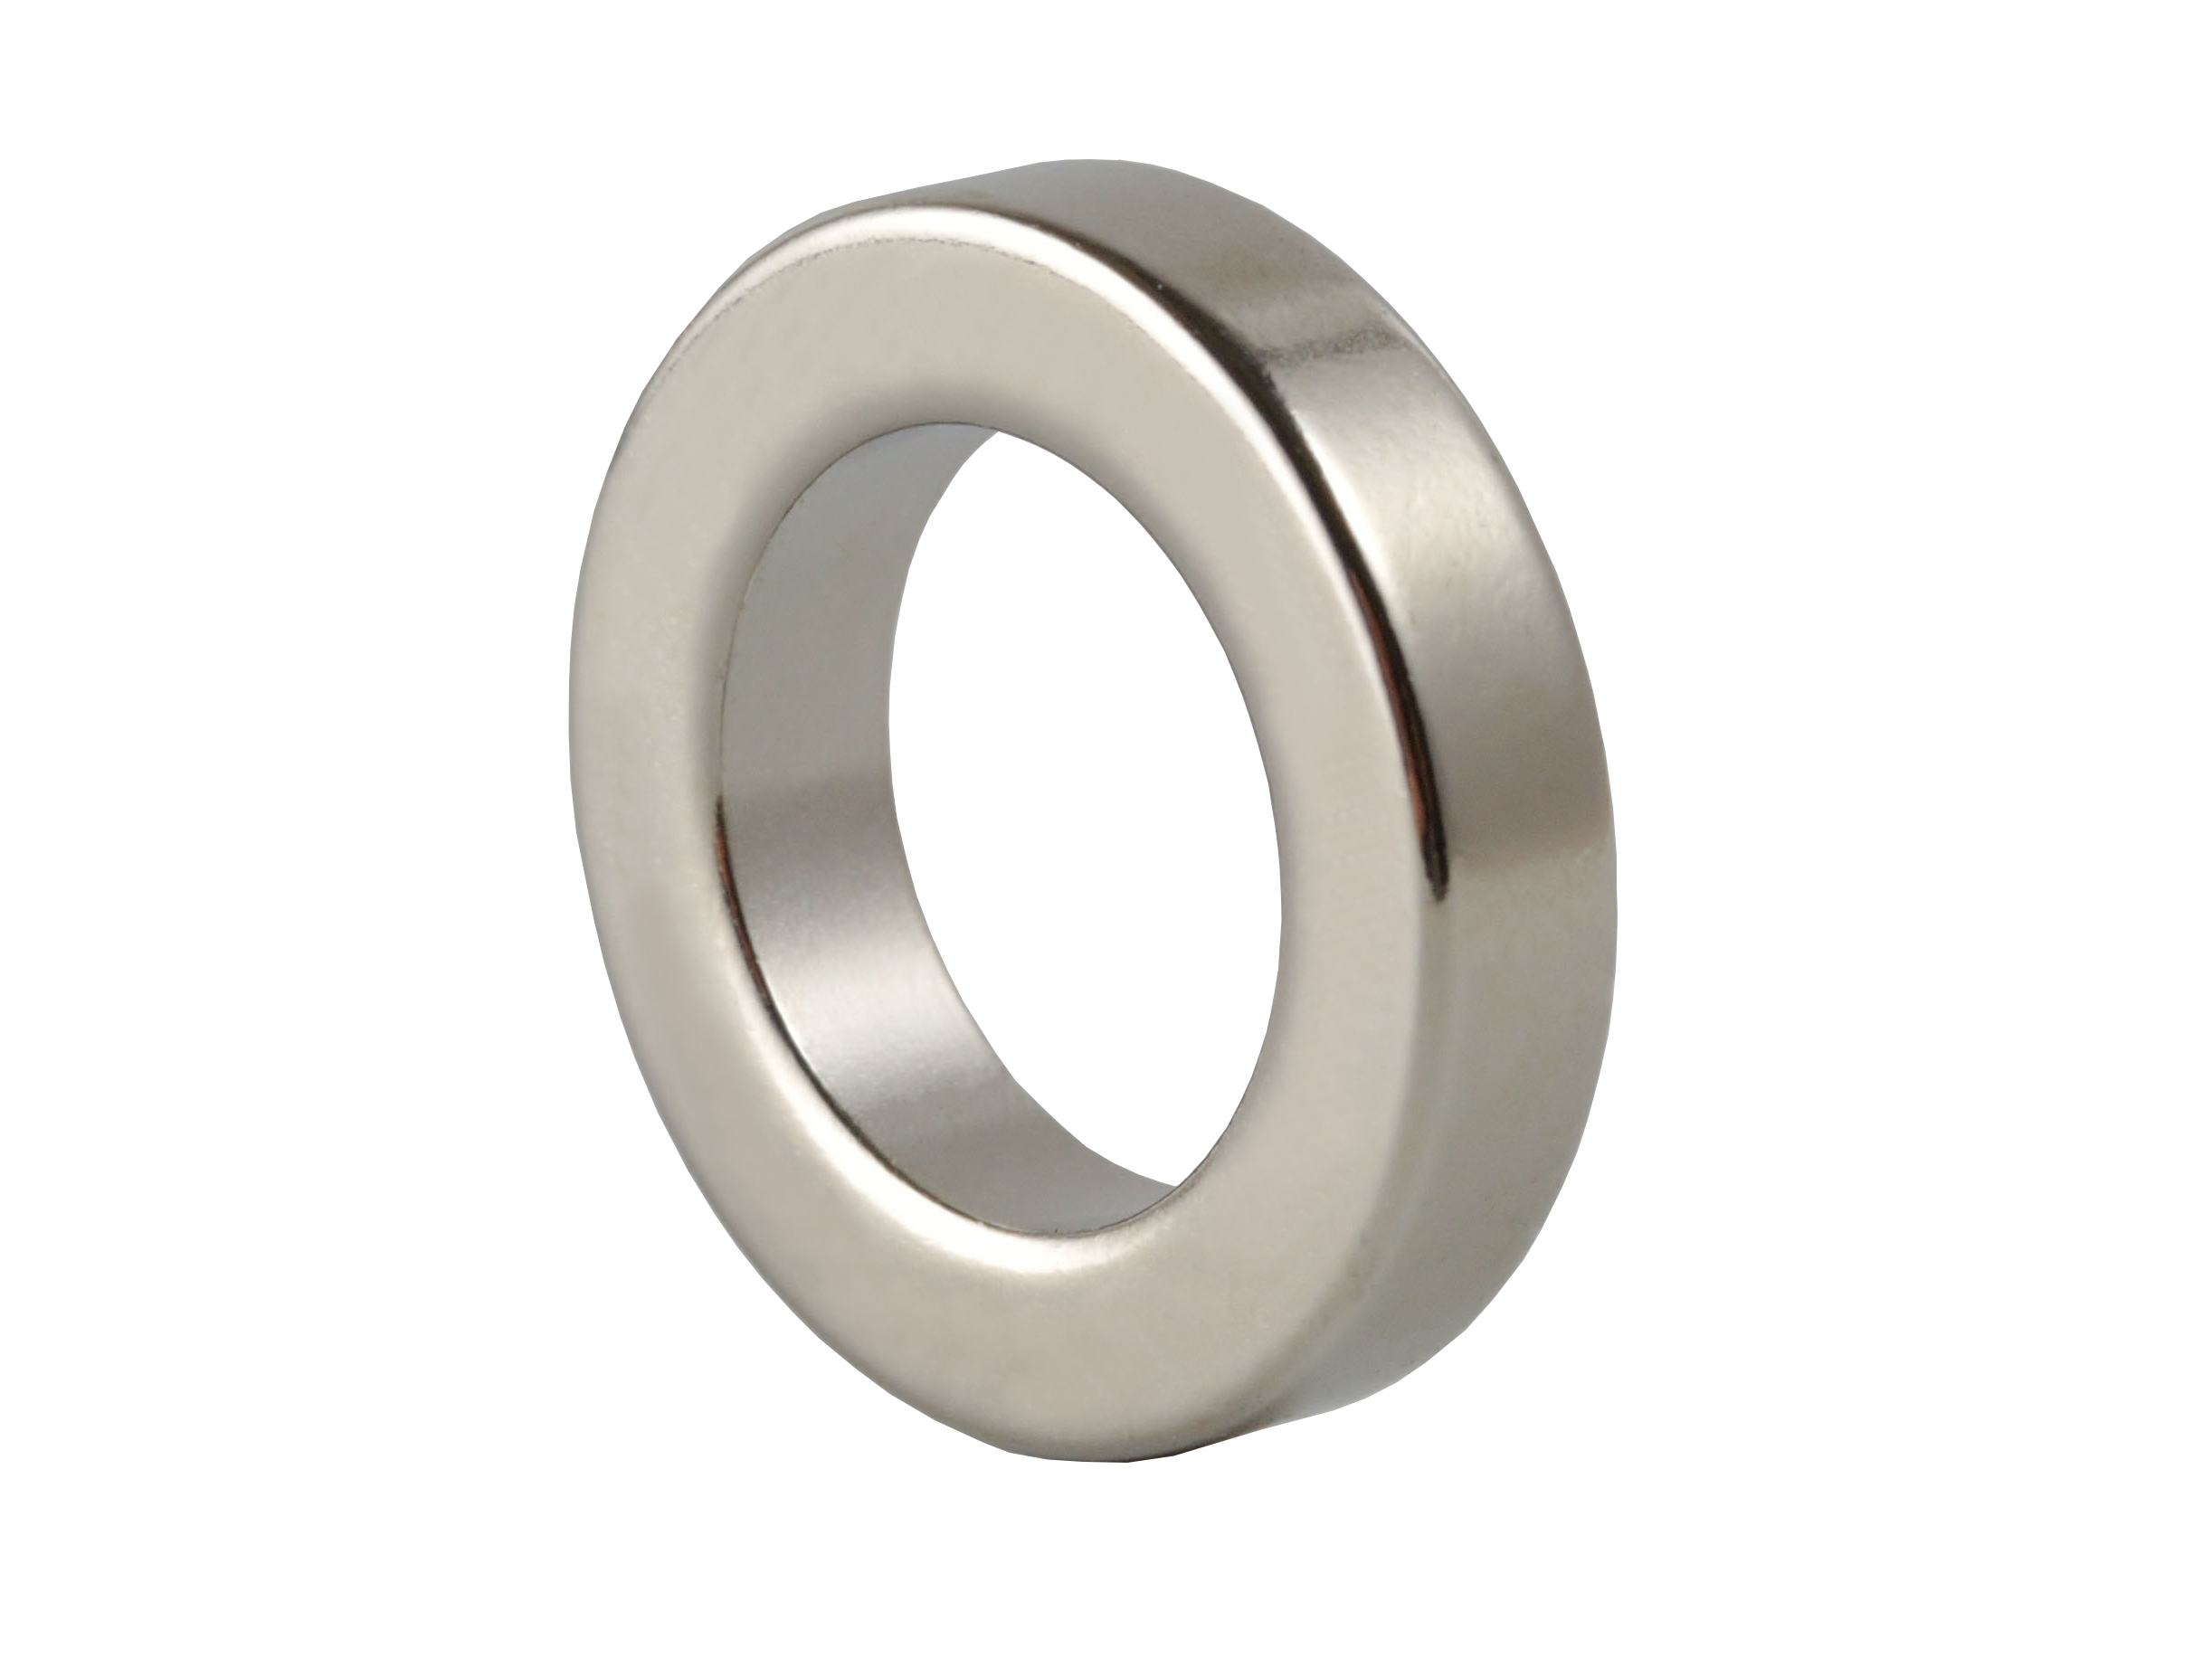 Ring‑Shaped Neodymium Magnet (NOR058) 